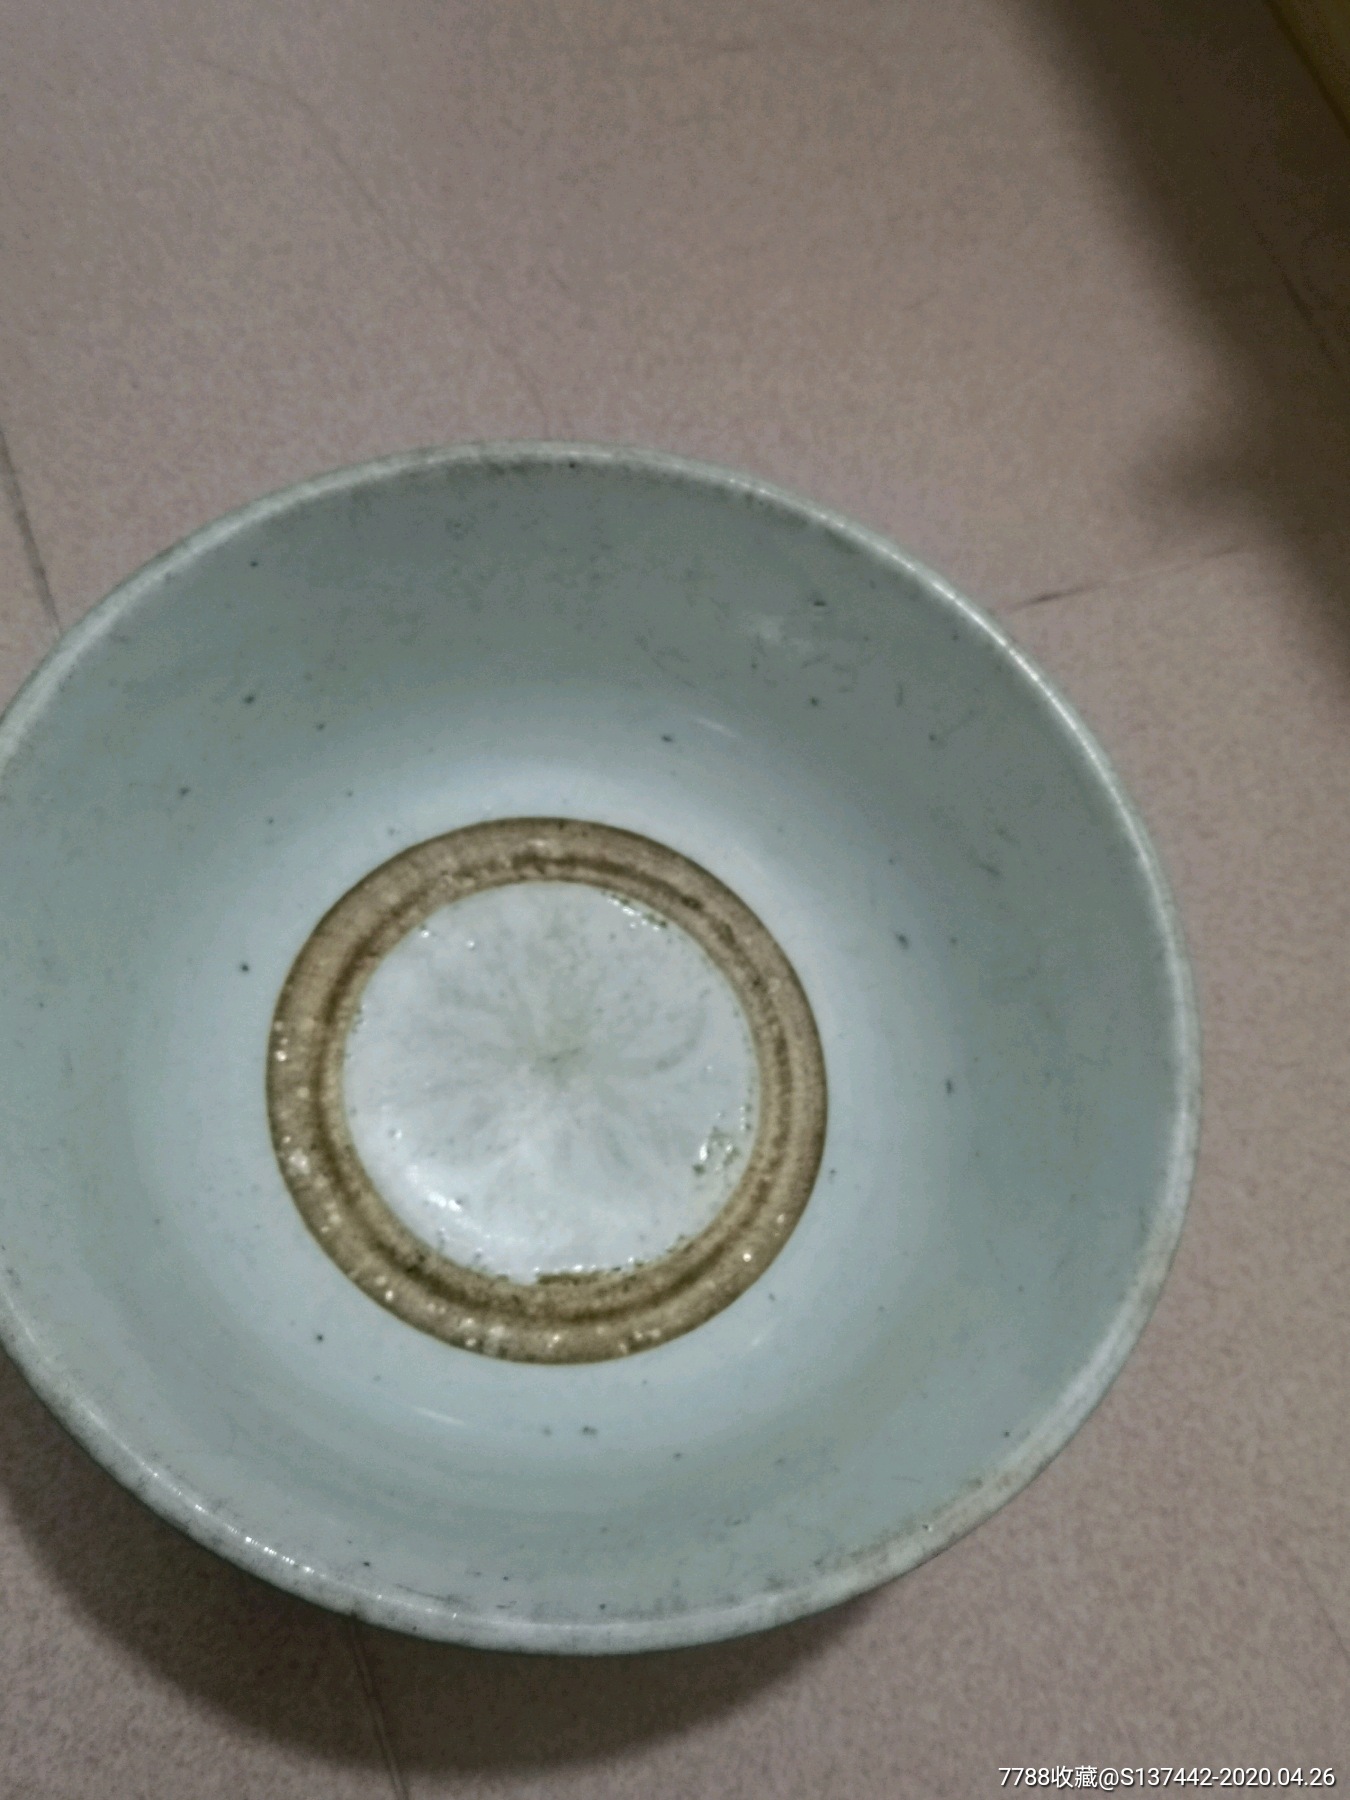 4个文革时期左右的大瓷碗,大碗